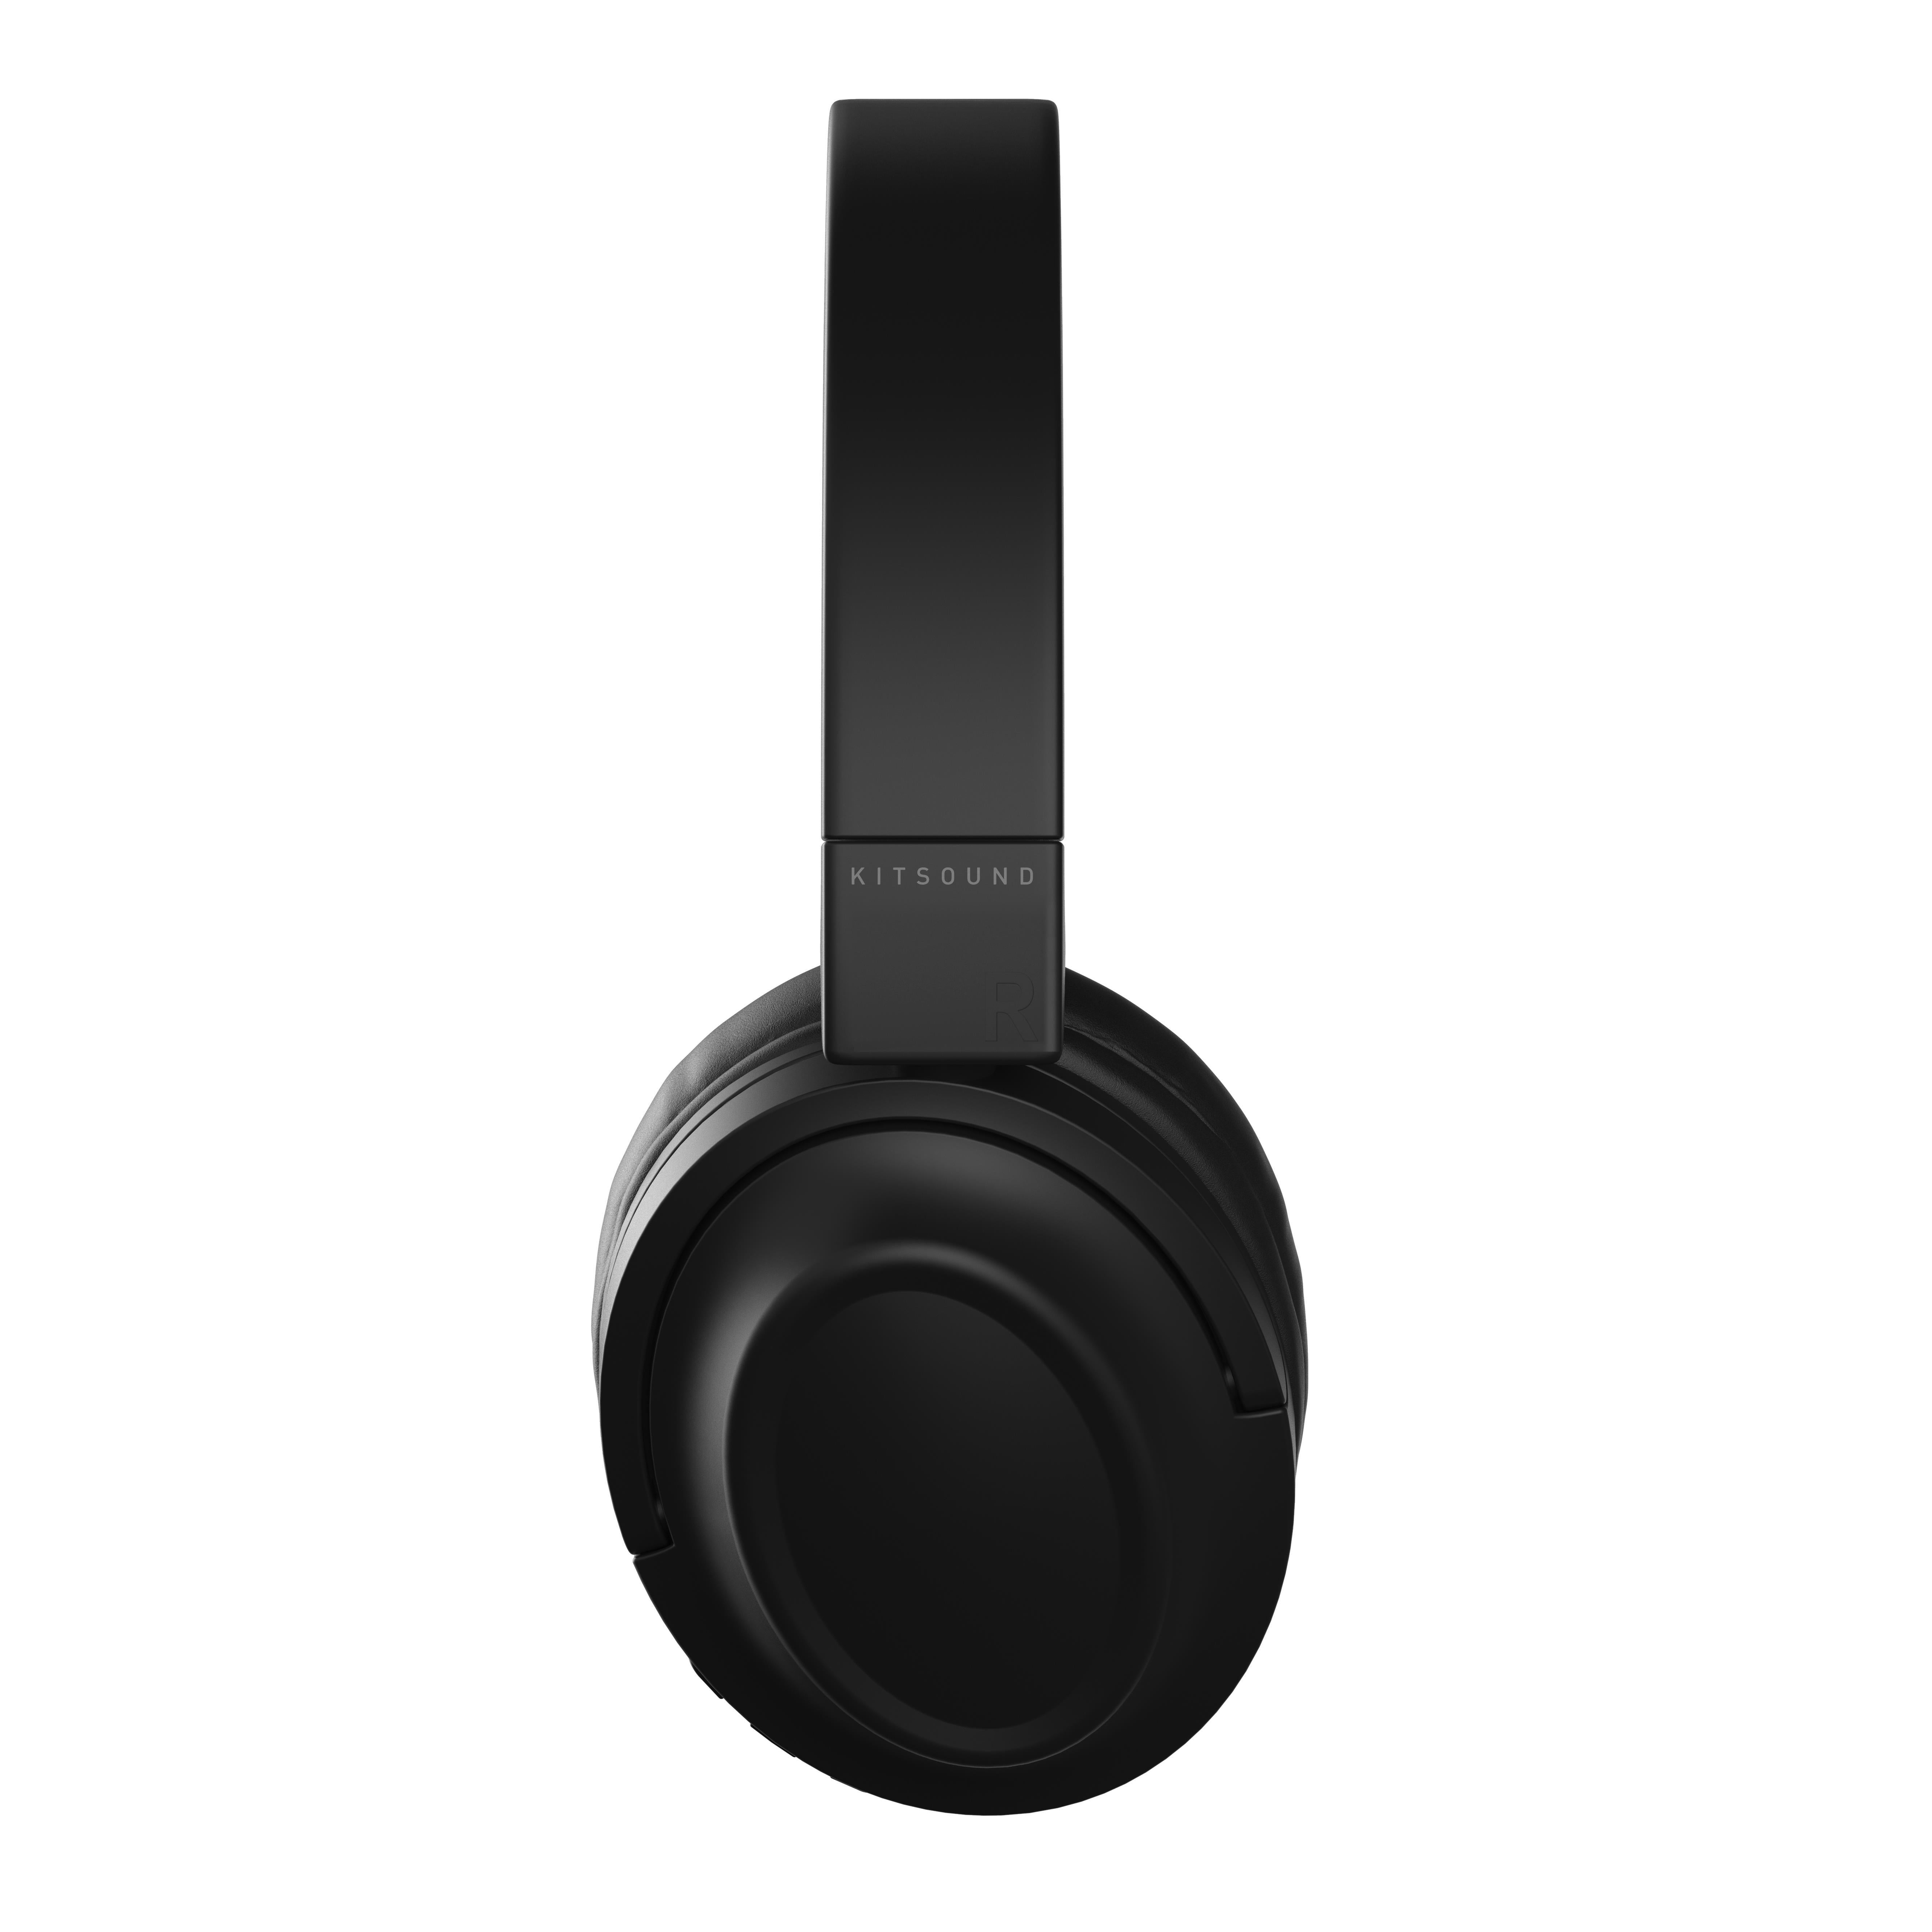 Kitsound Edge 50 Bluetooth On Ear Headphones - Black - Refurbished Good